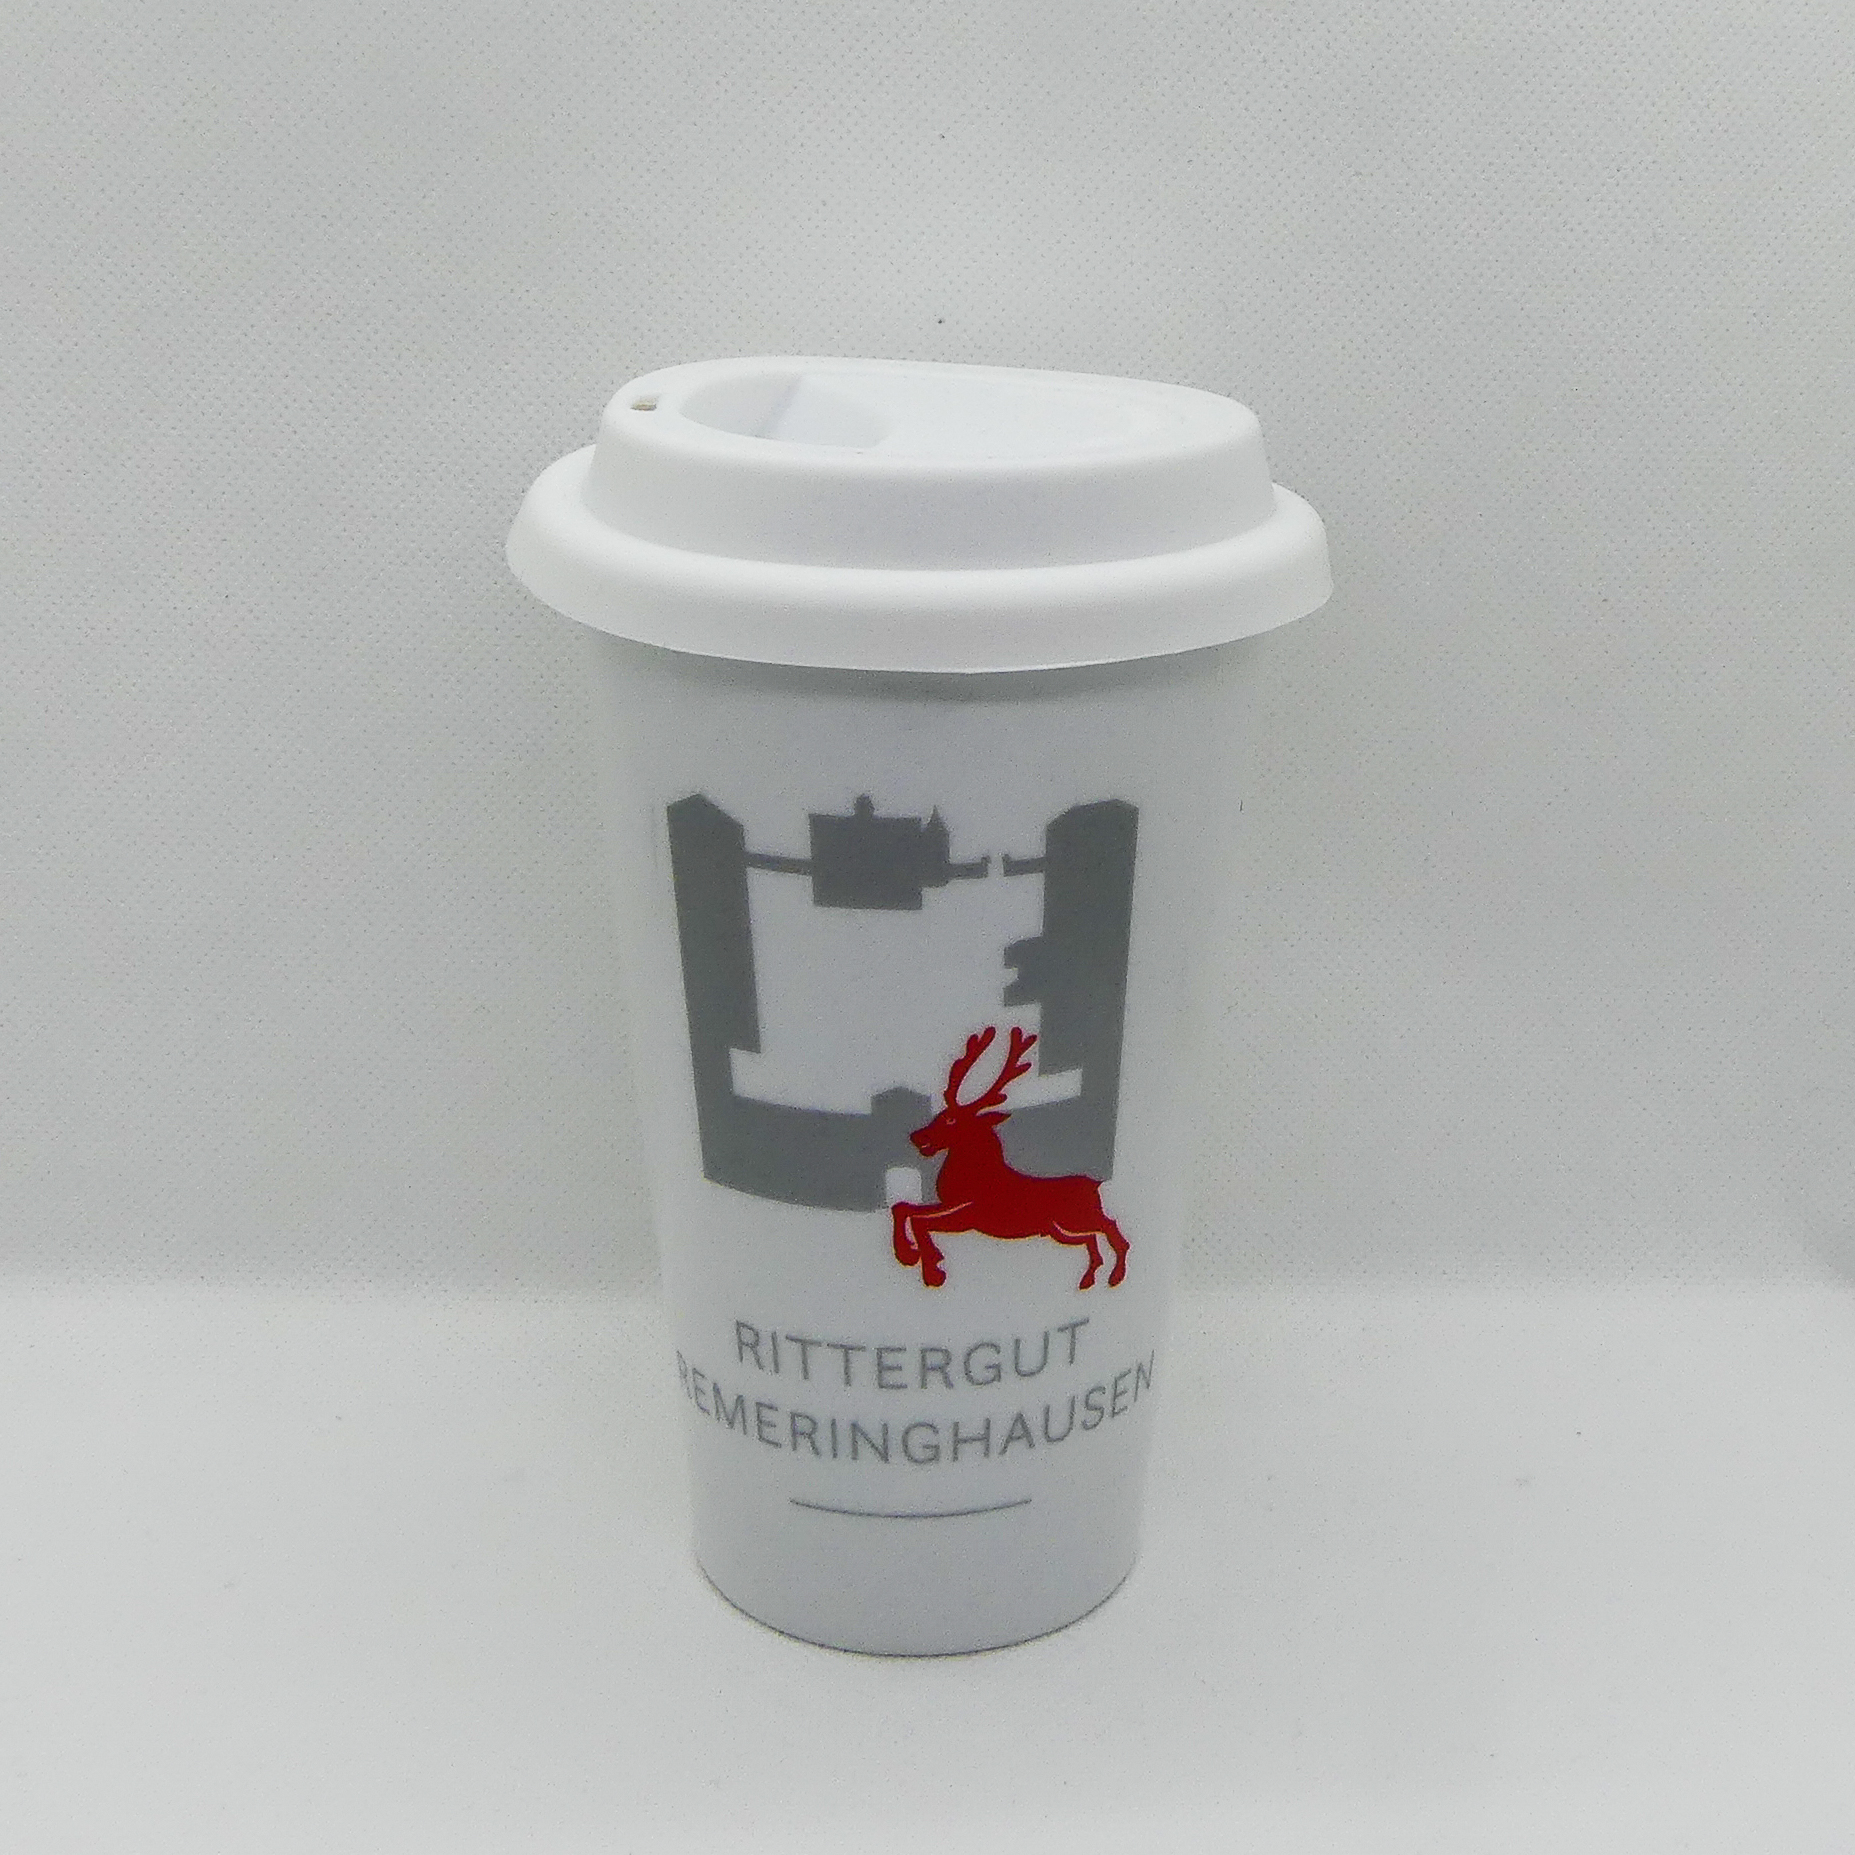 Kaffeebecher „Rittergut Remeringhausen"